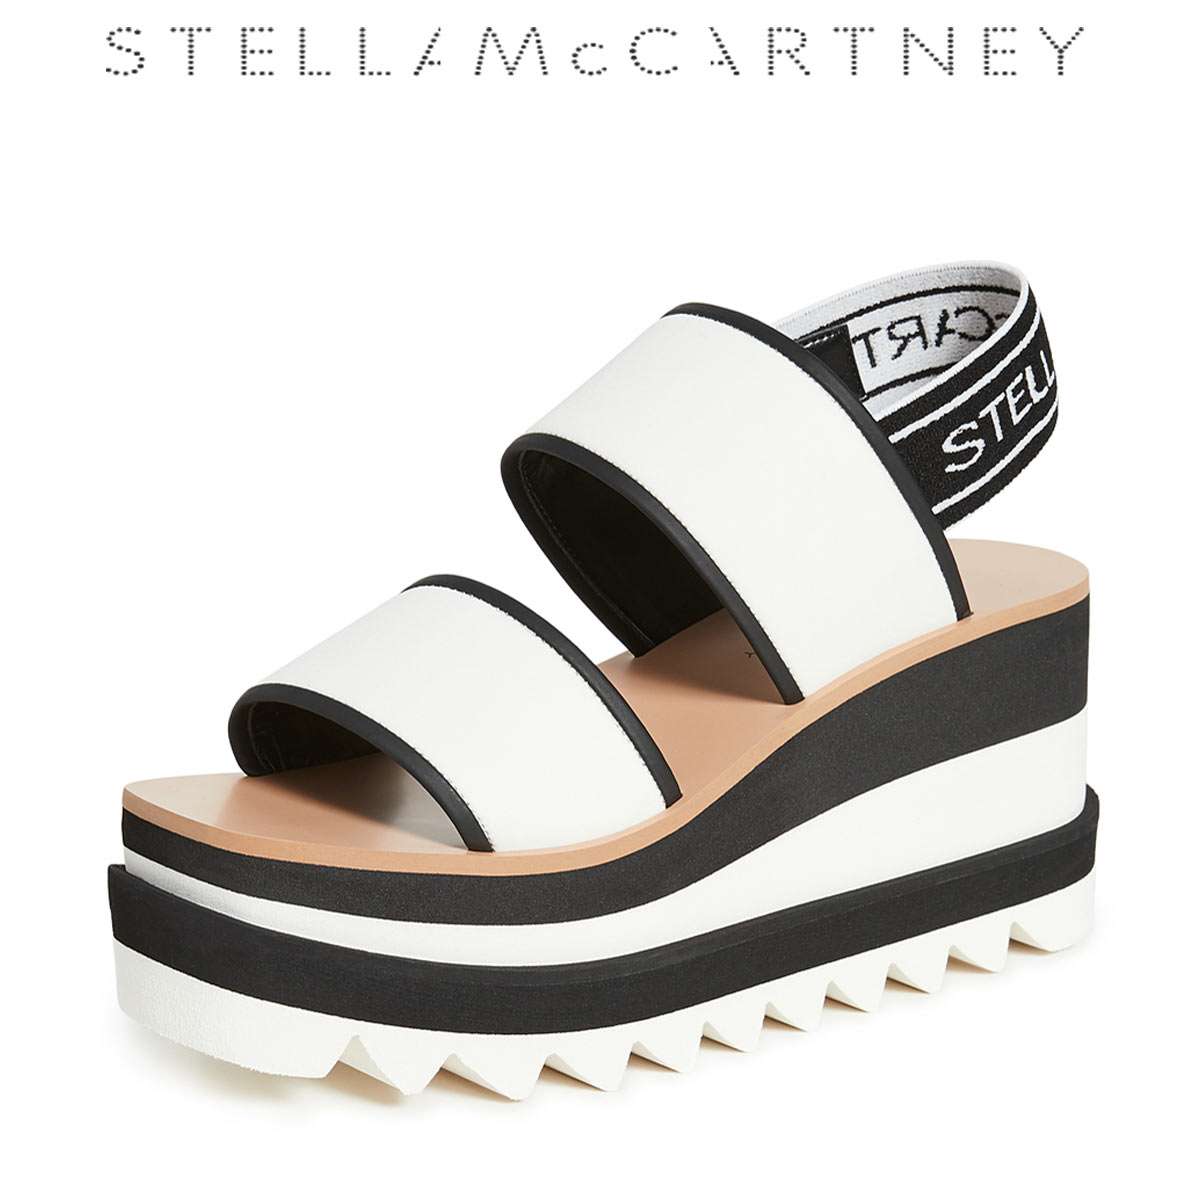 ステラ マッカートニー サンダル レディース 厚底 ウェッジ ブランド Stella McCartney | Rio Planet